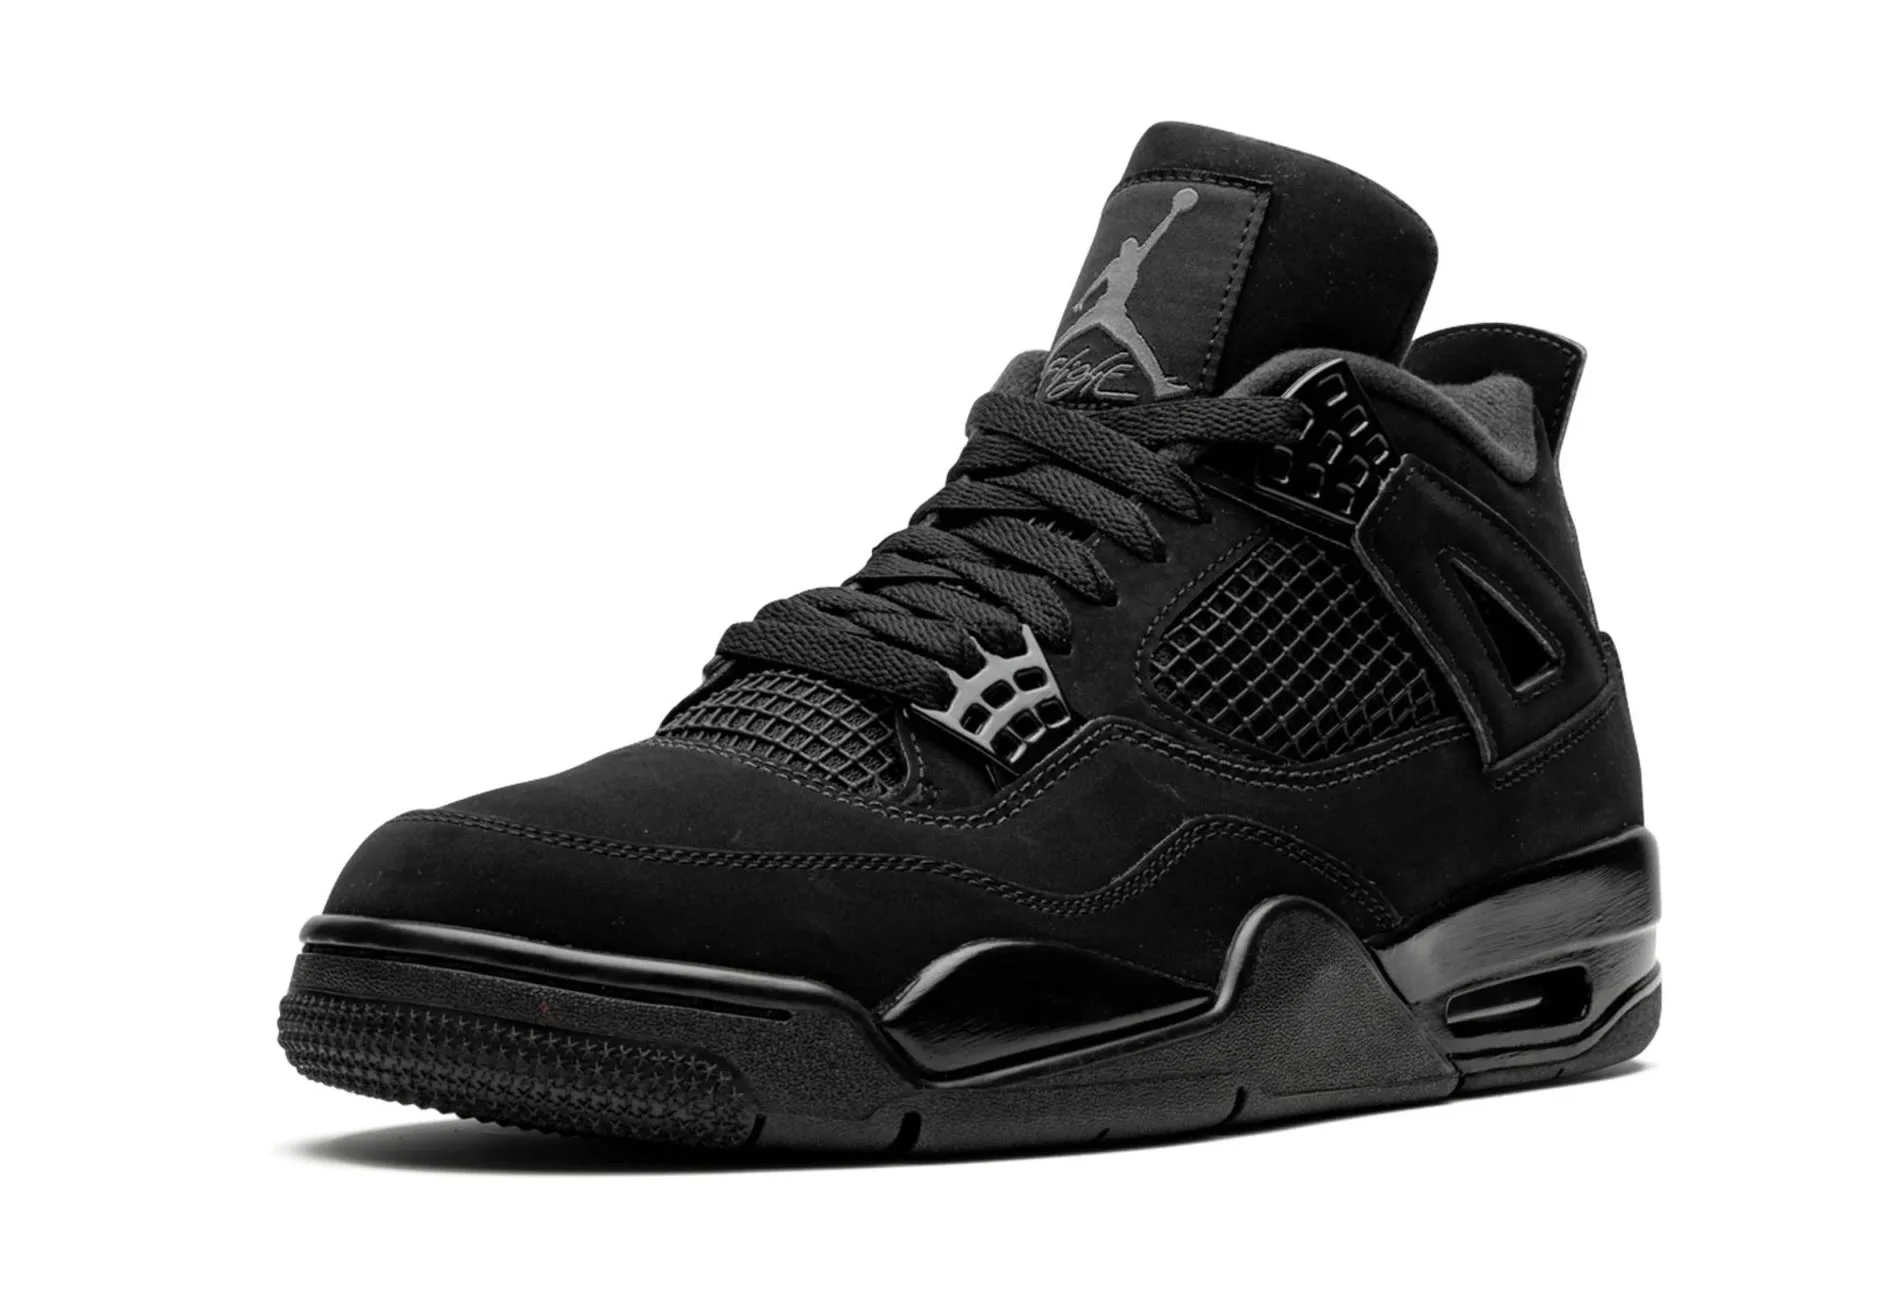 Air Jordan 4 Retro Black Cat 2020 Cu1110 010 Ljr Batch Sneakers (2) - www.ljrofficial.com